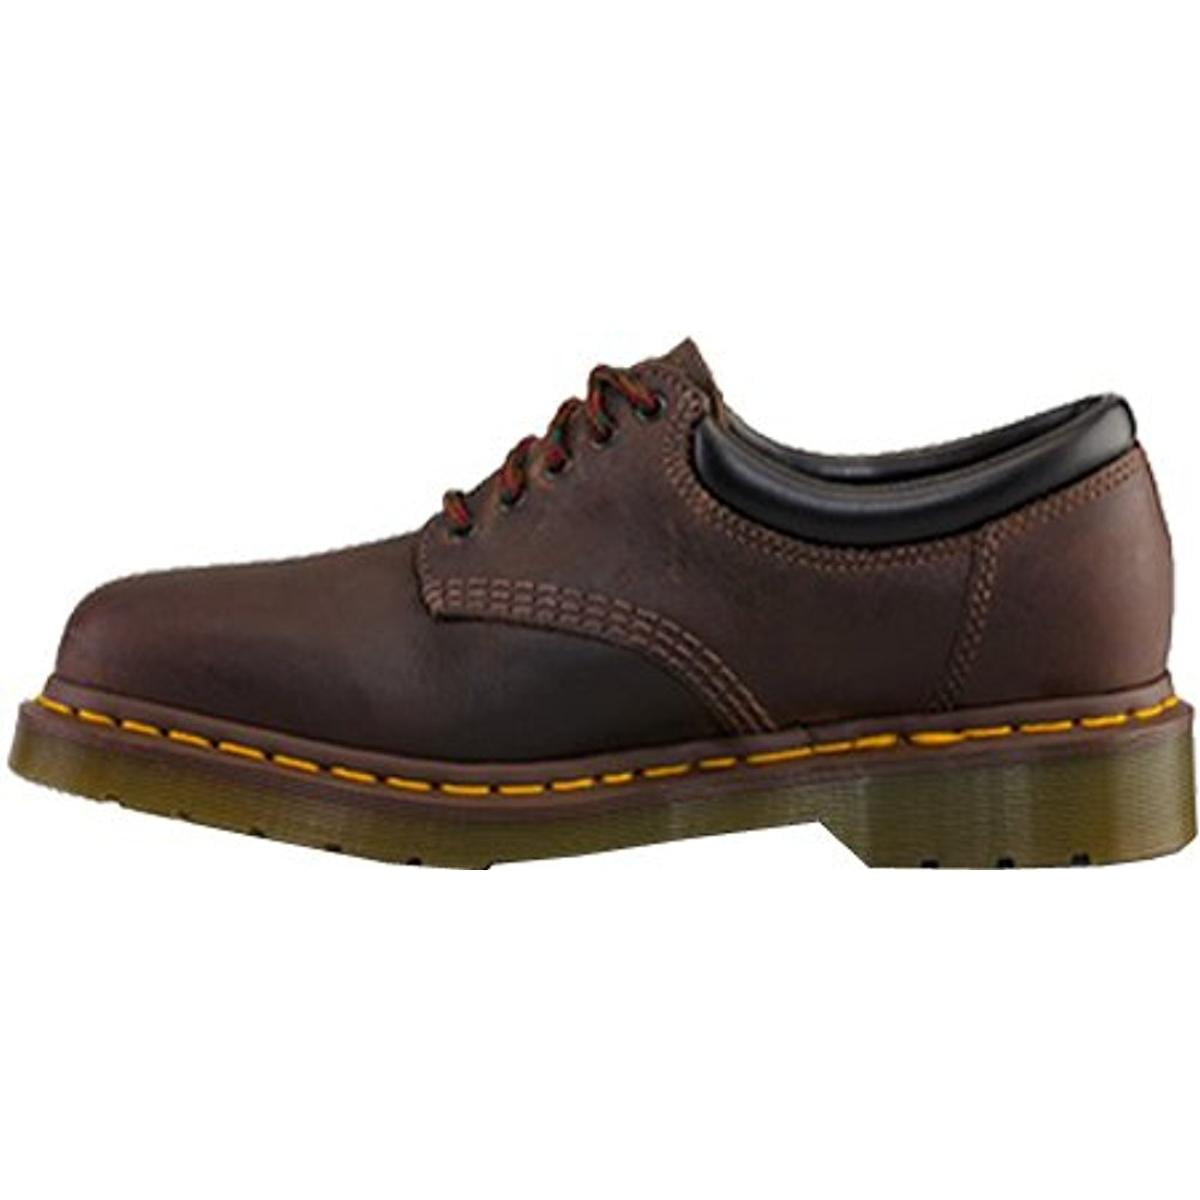 men's slip resistant work shoes walmart